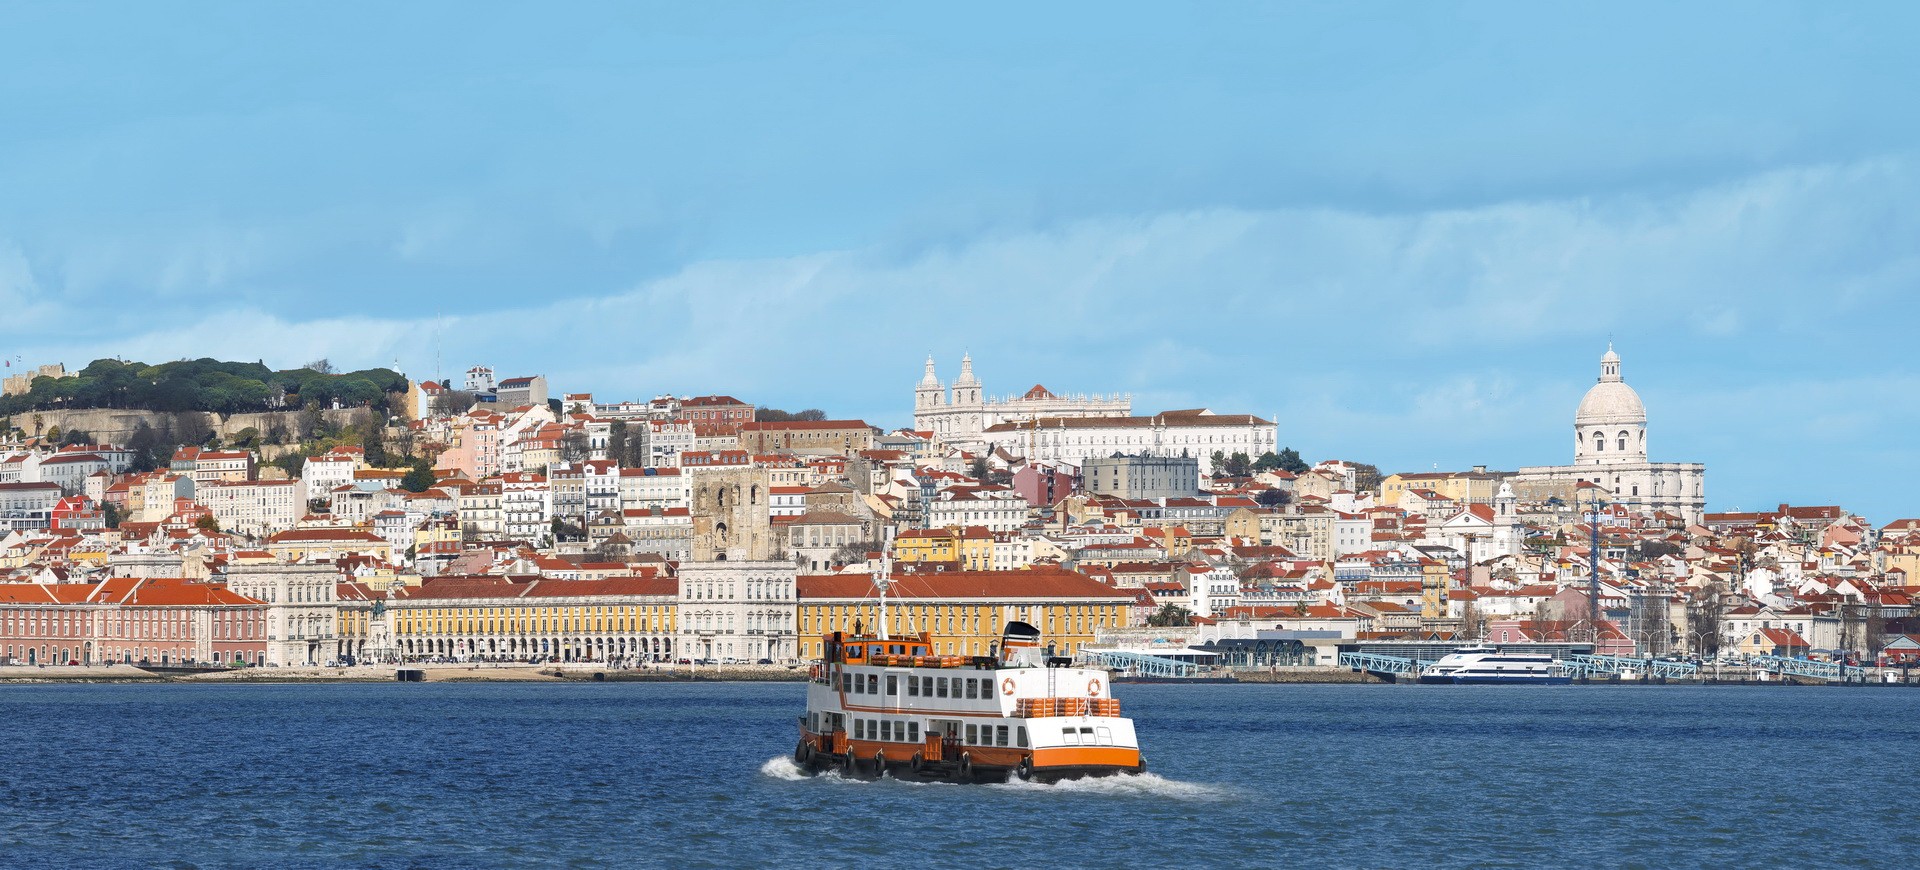 Portugal Lisbonne vue panoramique